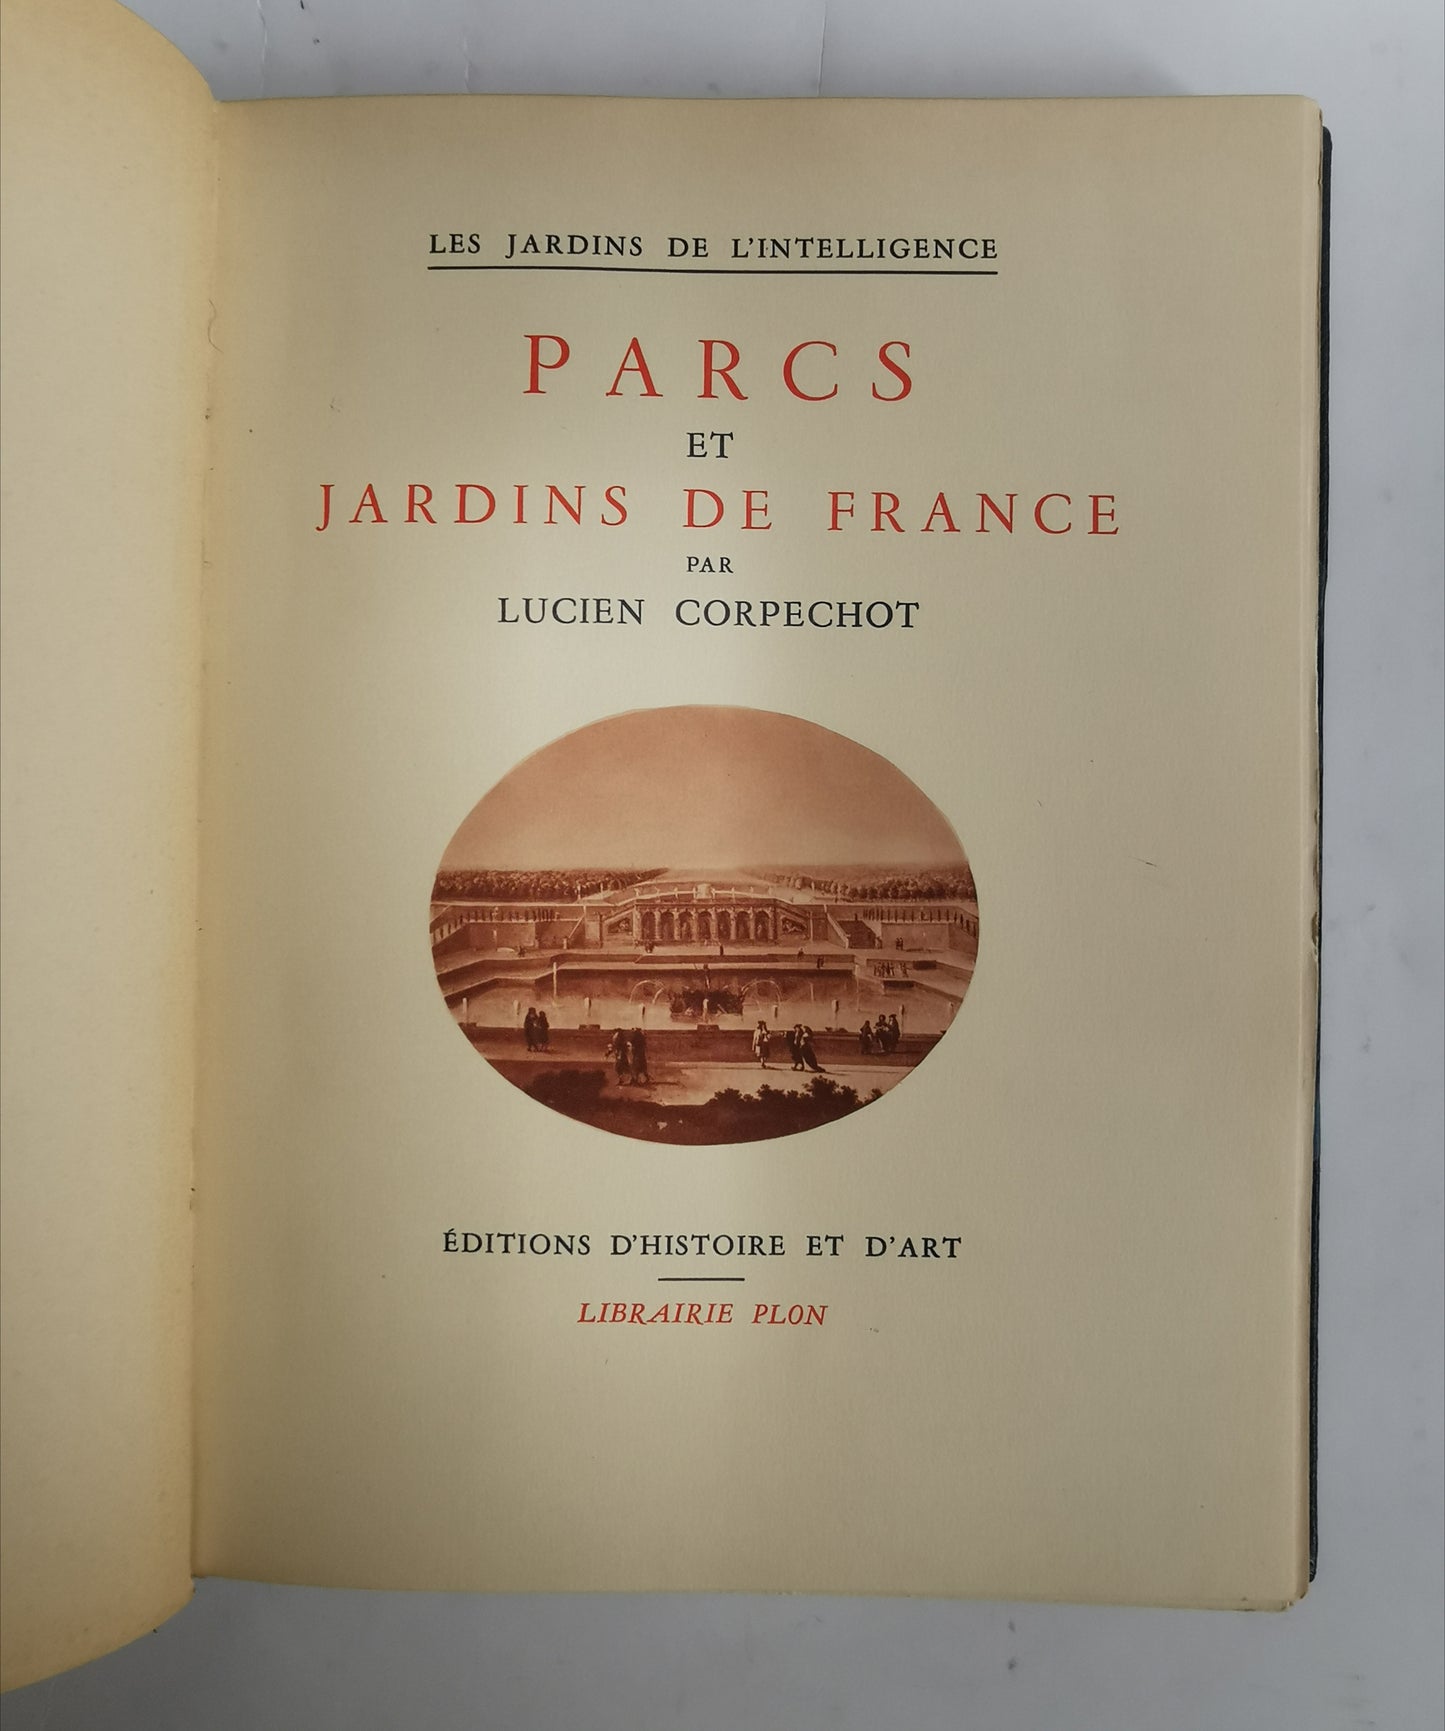 Parcs et Jardins de France, Lucien Corpechot, "Les Jardins de l'intelligence", Editions d'histoire et d'art, Librairie Plon, 1937.